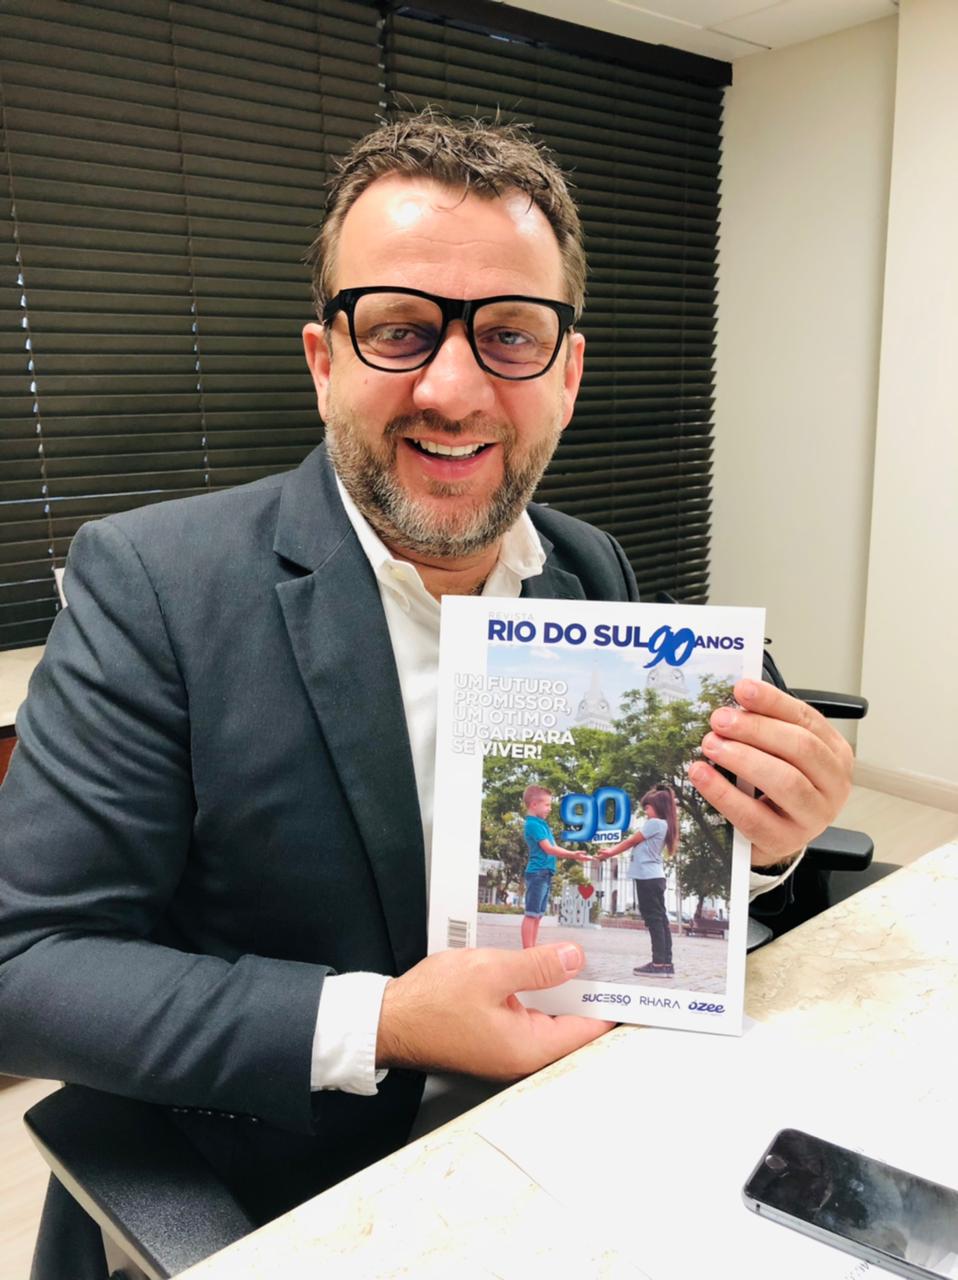 Revista Rio do Sul 90 anos circulando por Santa Catarina